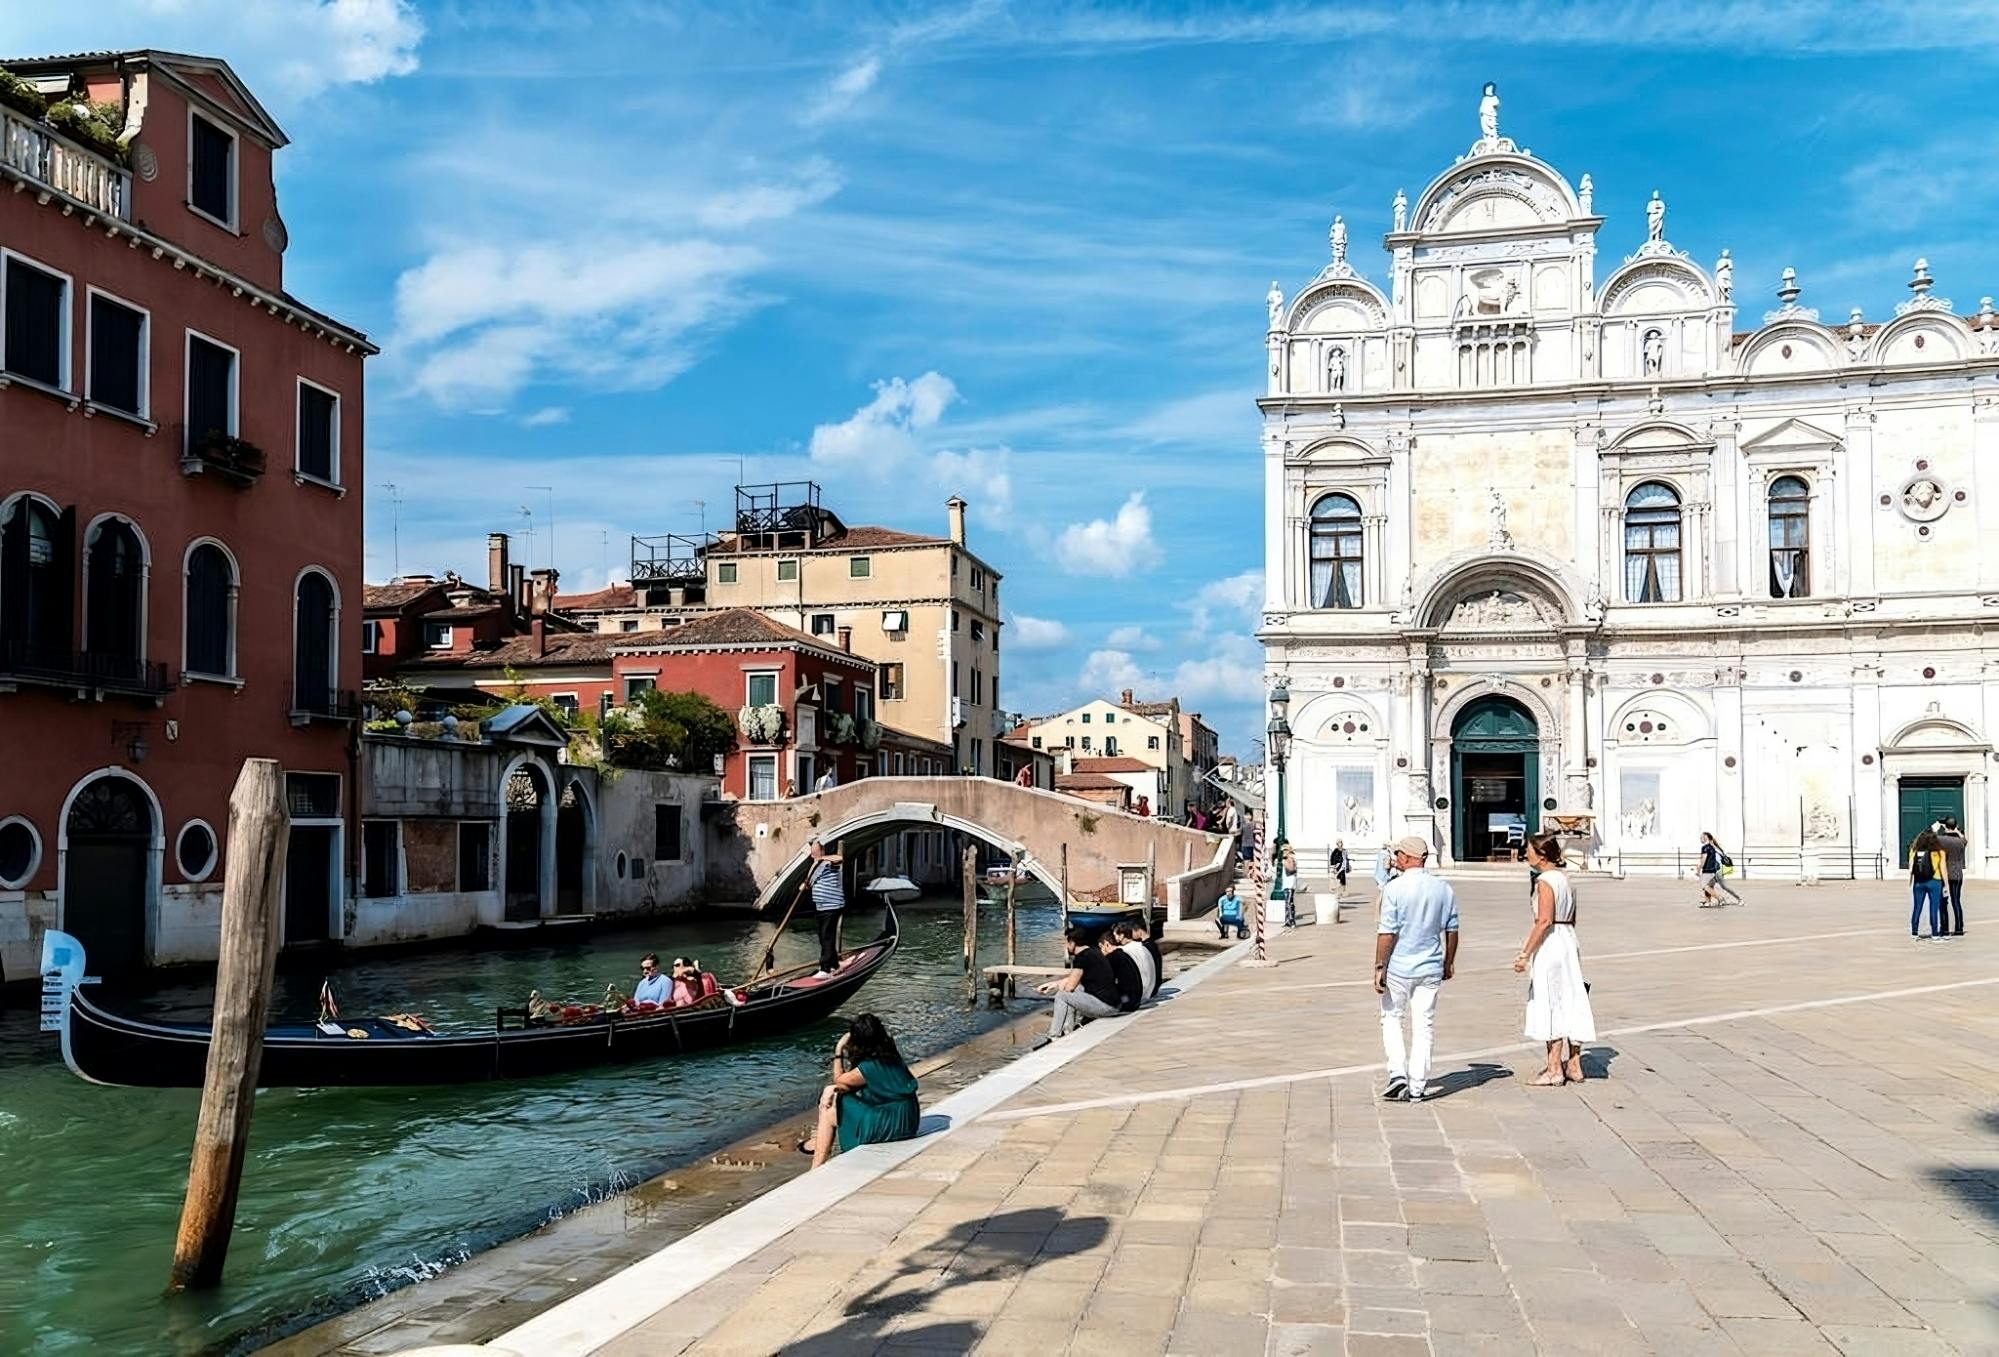 Privat gondoltur i Venedig uden for den slagne vej